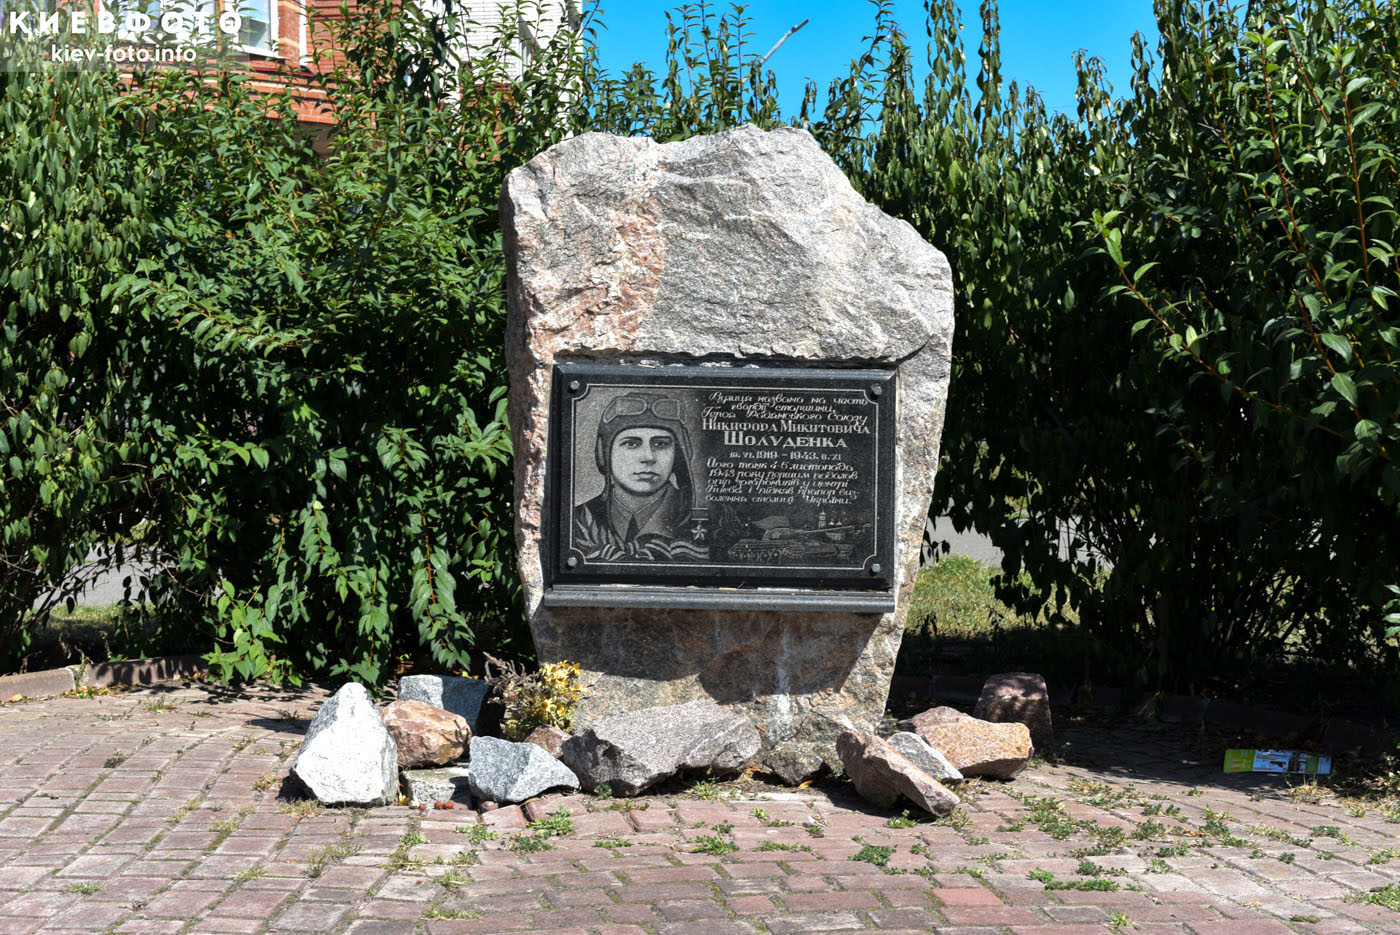 Памятник Никифору Шолуденко в Вышгороде